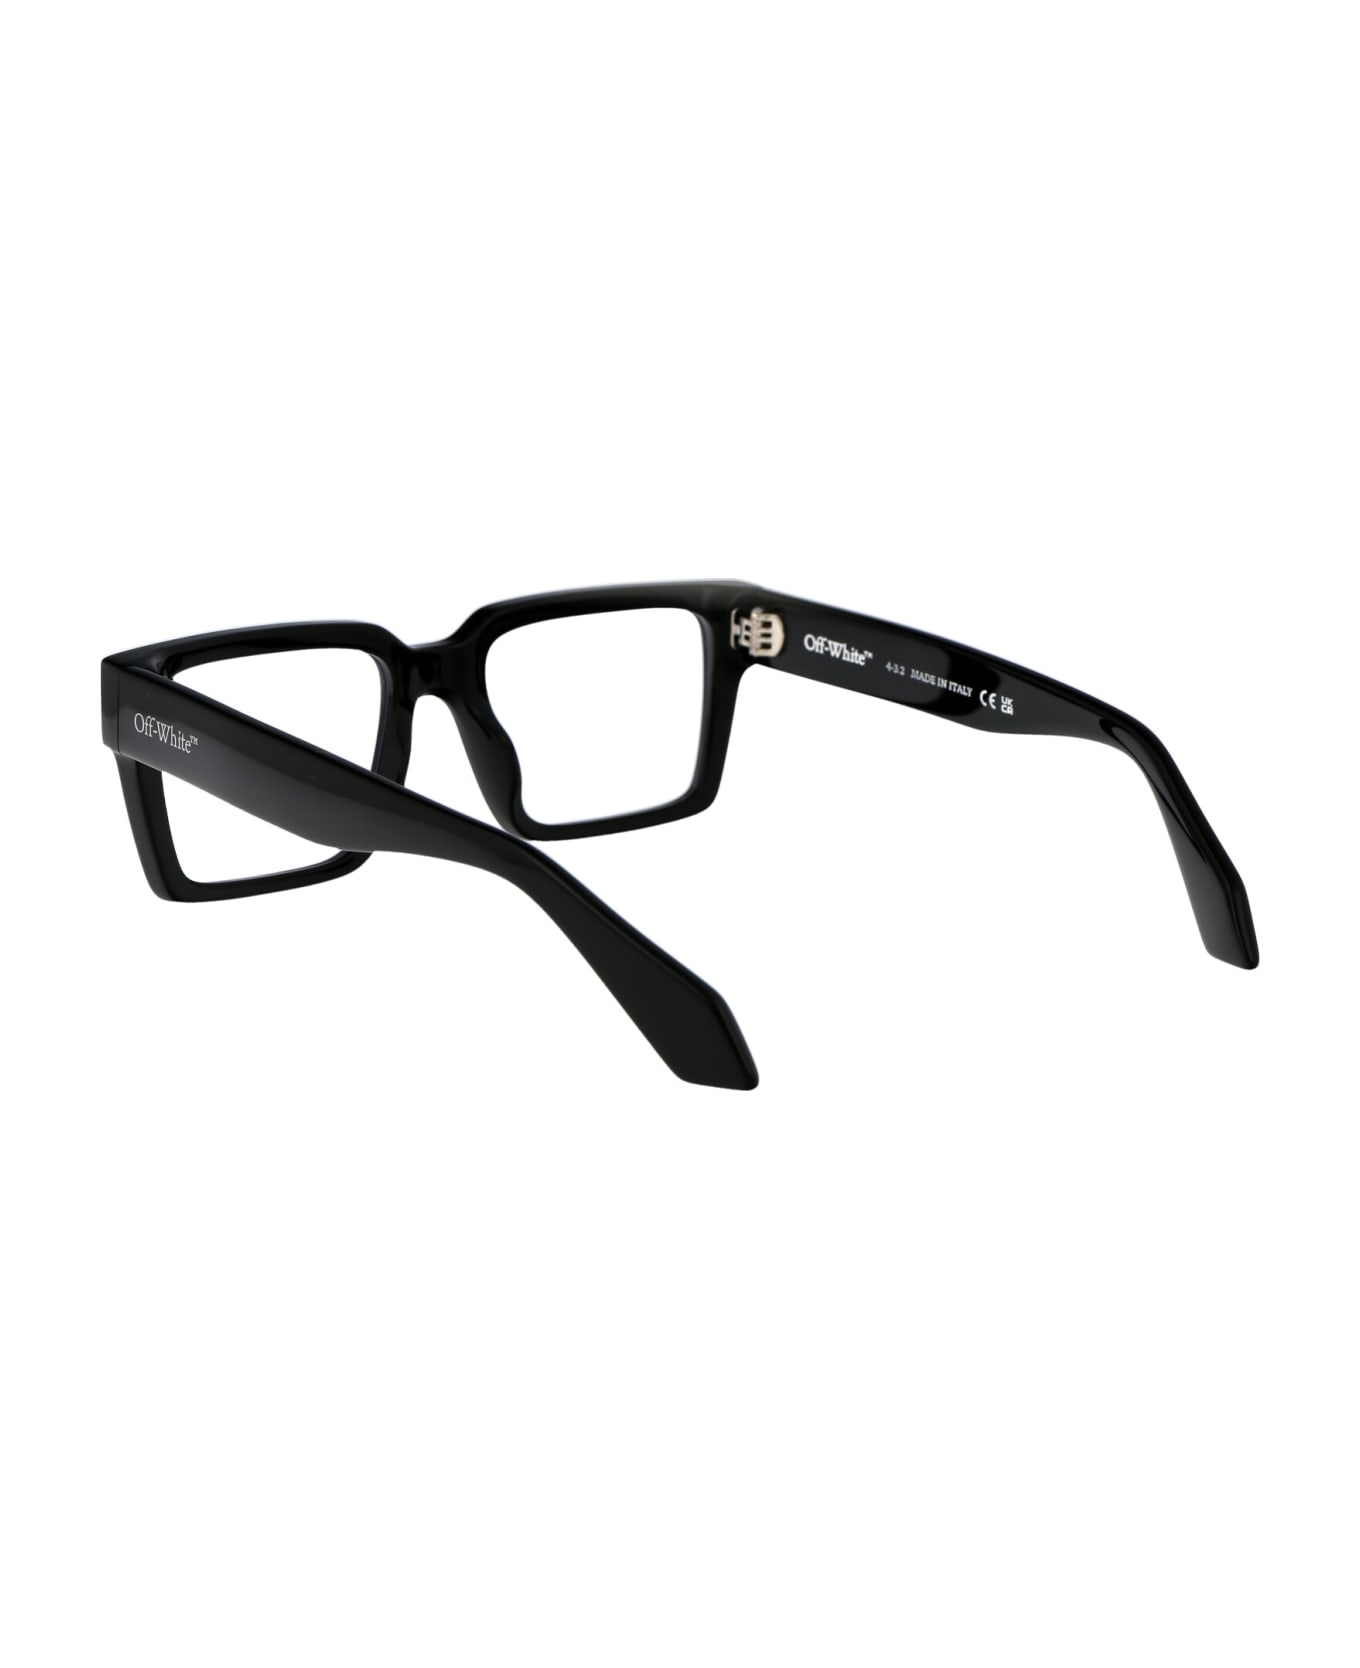 Off-White Optical Style 54 Glasses - 1000 BLACK アイウェア